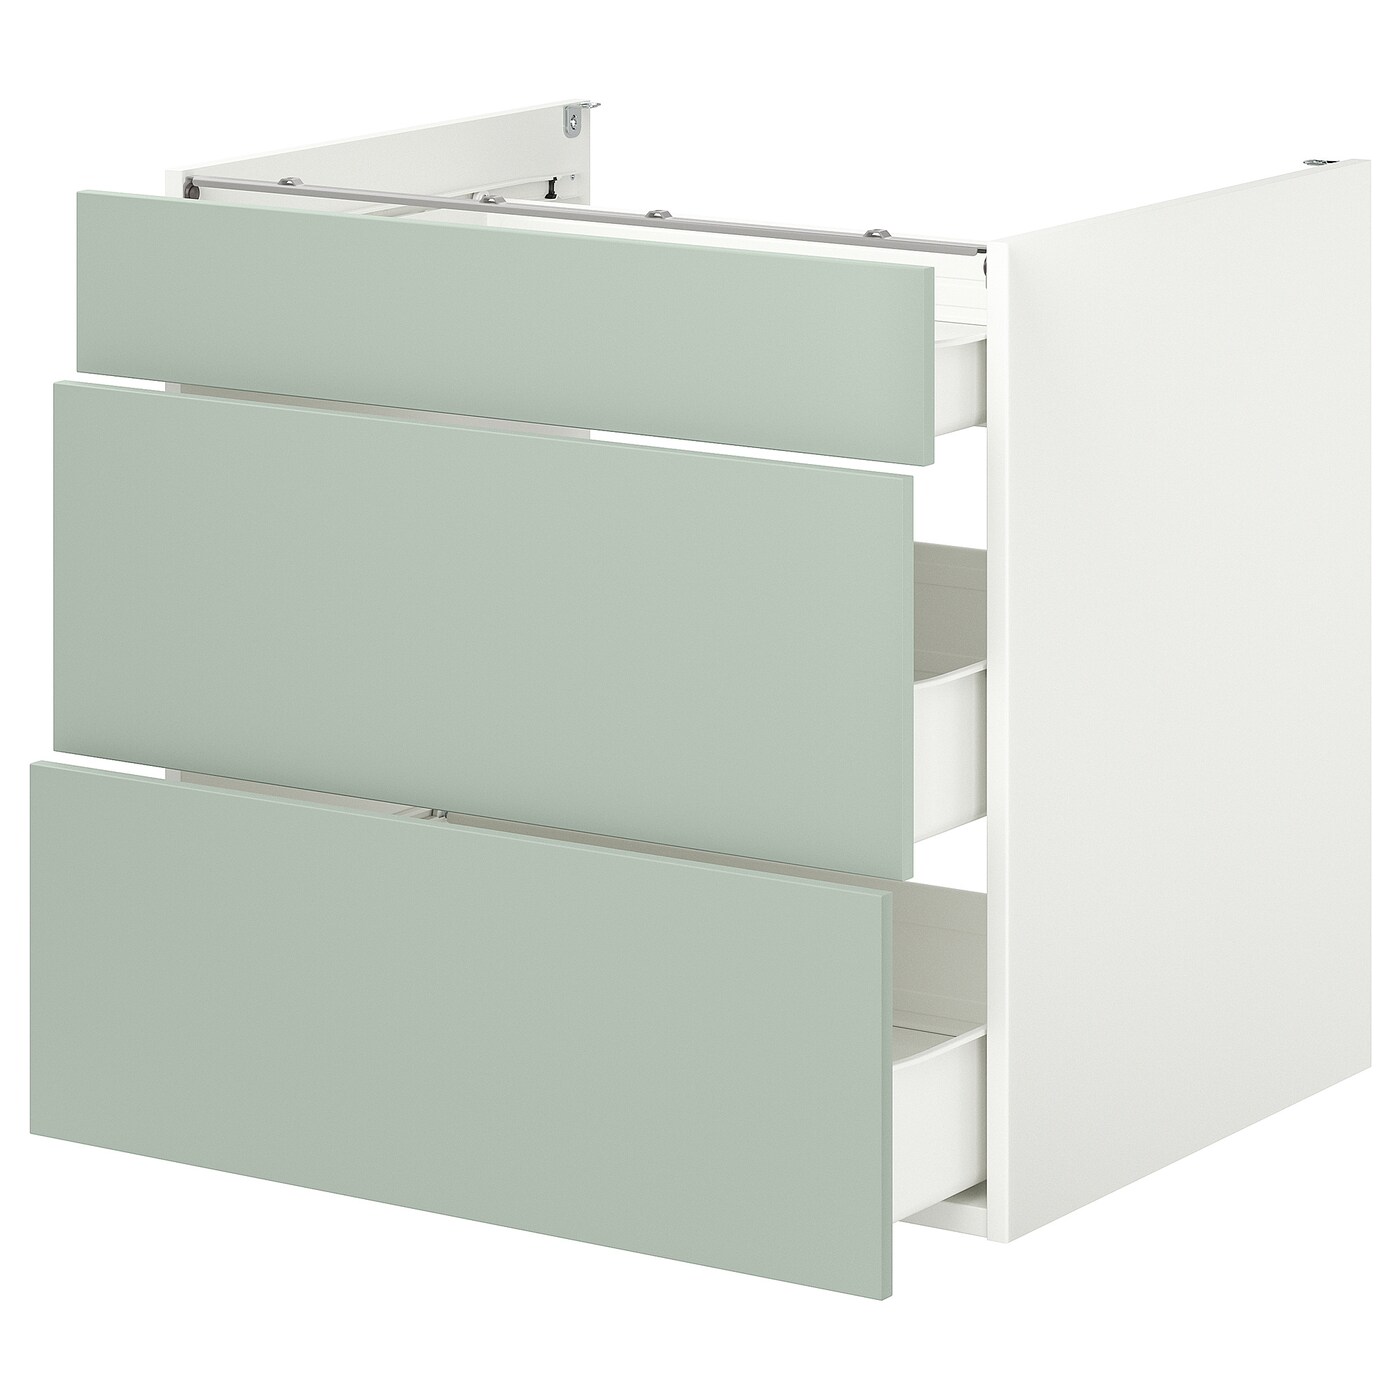 Напольный шкаф с ящиками - IKEA ENHET, 75x62x80см, белый/светло-серый, ЭХНЕТ ИКЕА